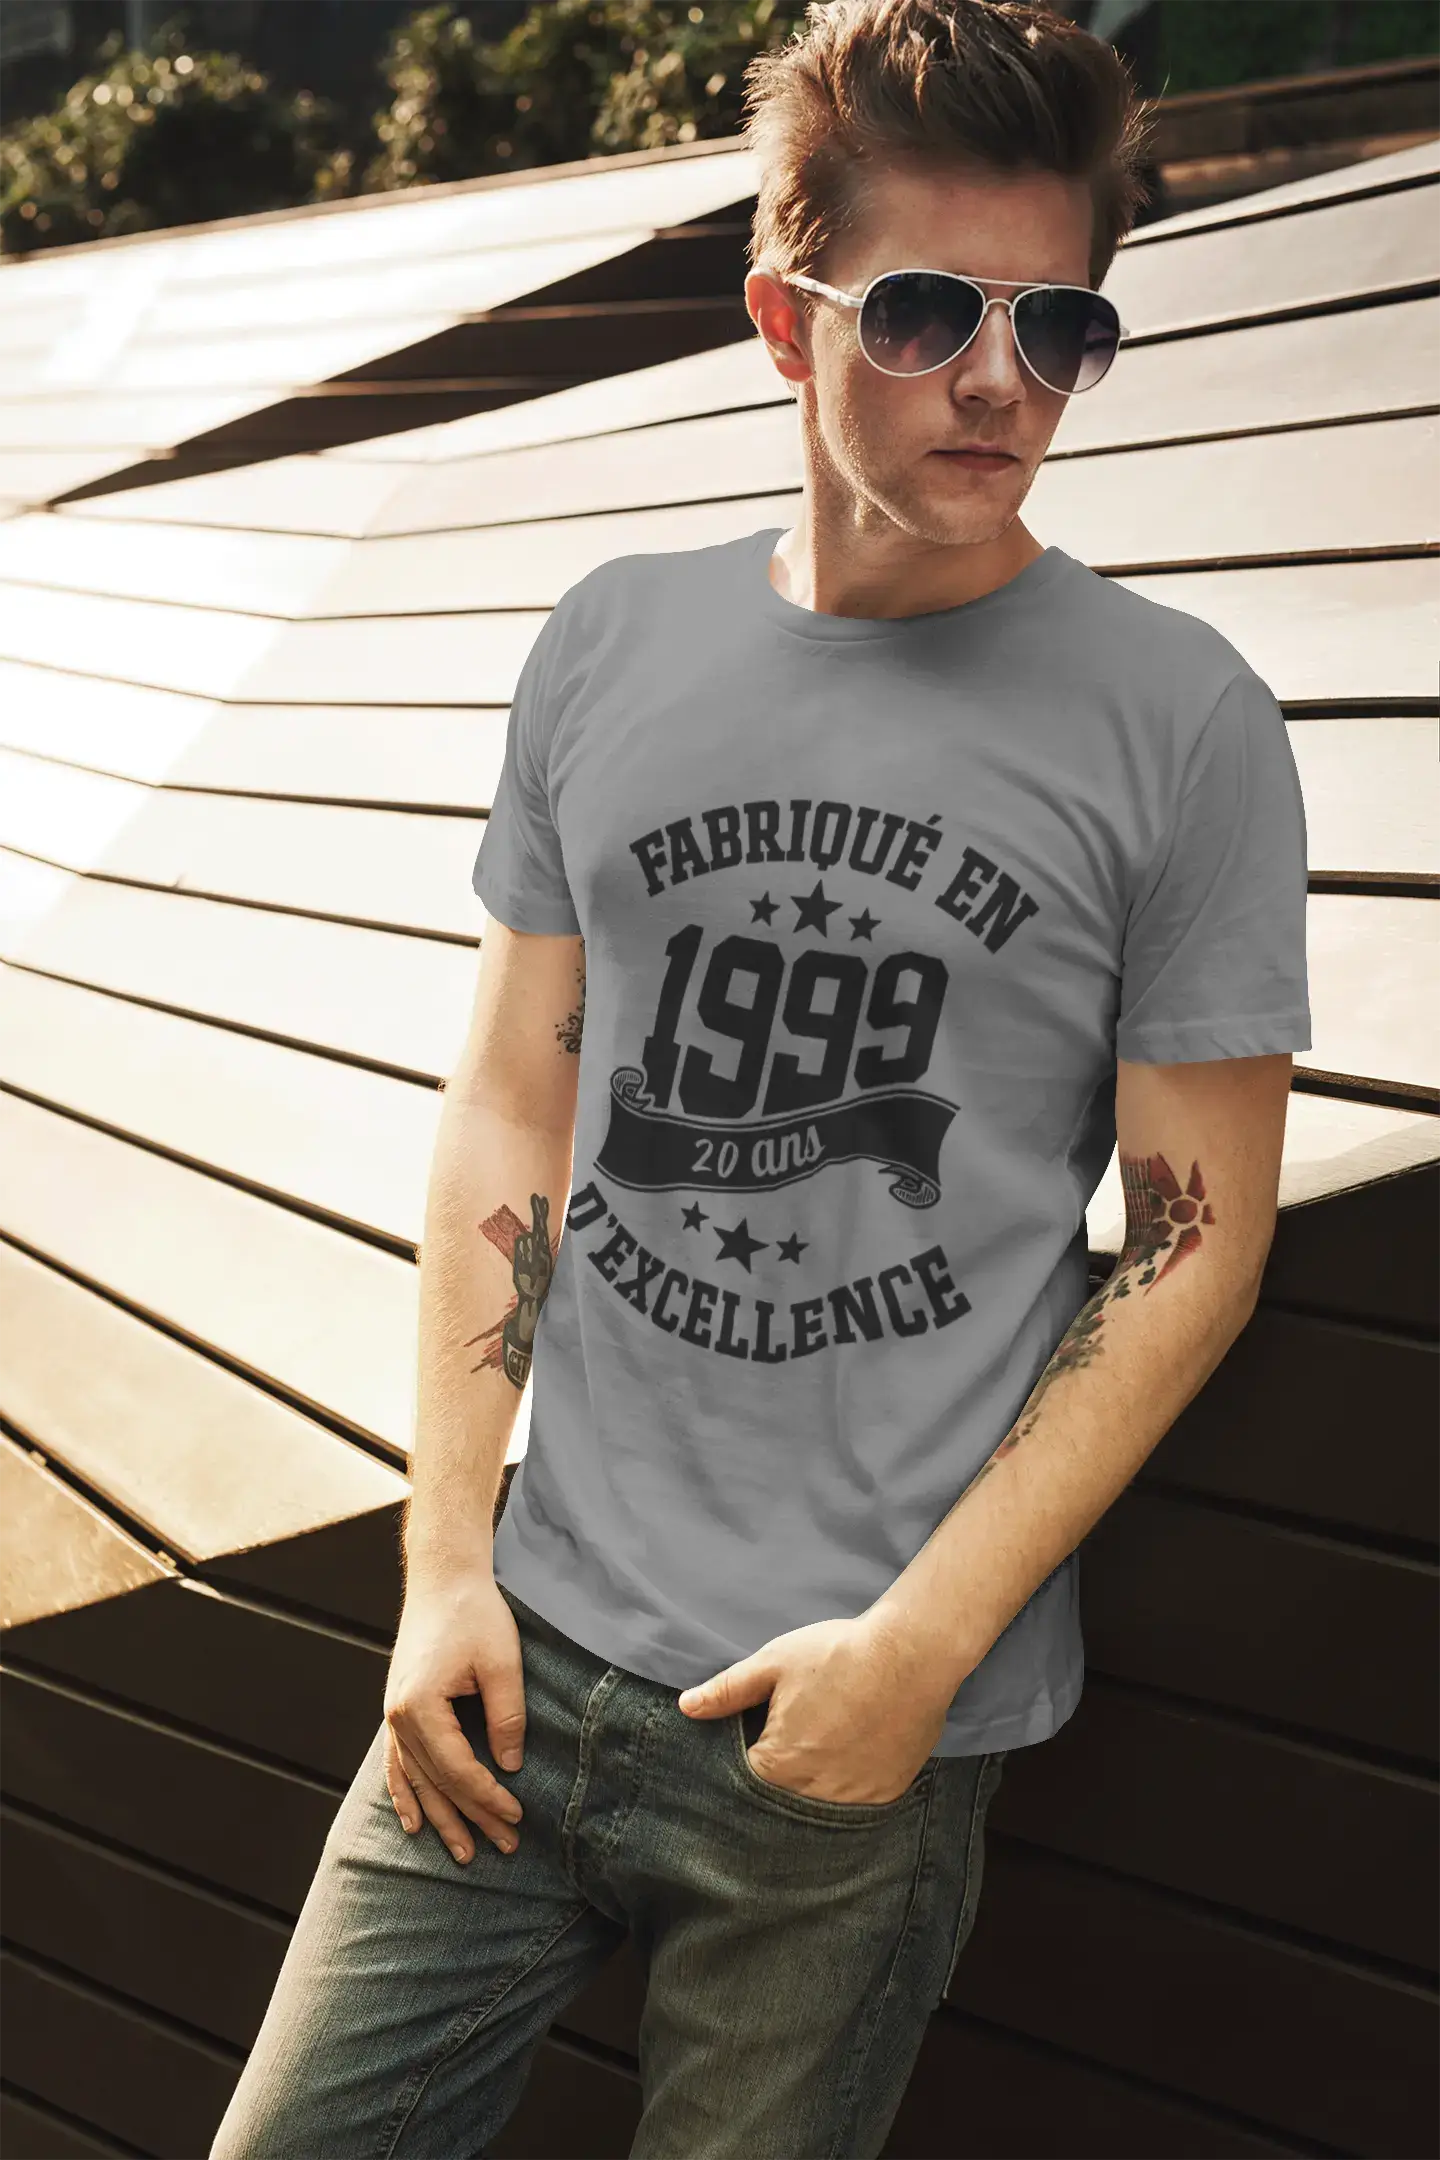 ULTRABASIC - Fabriqué en 1999, 20 Ans d'être Génial Unisex T-Shirt Blanco